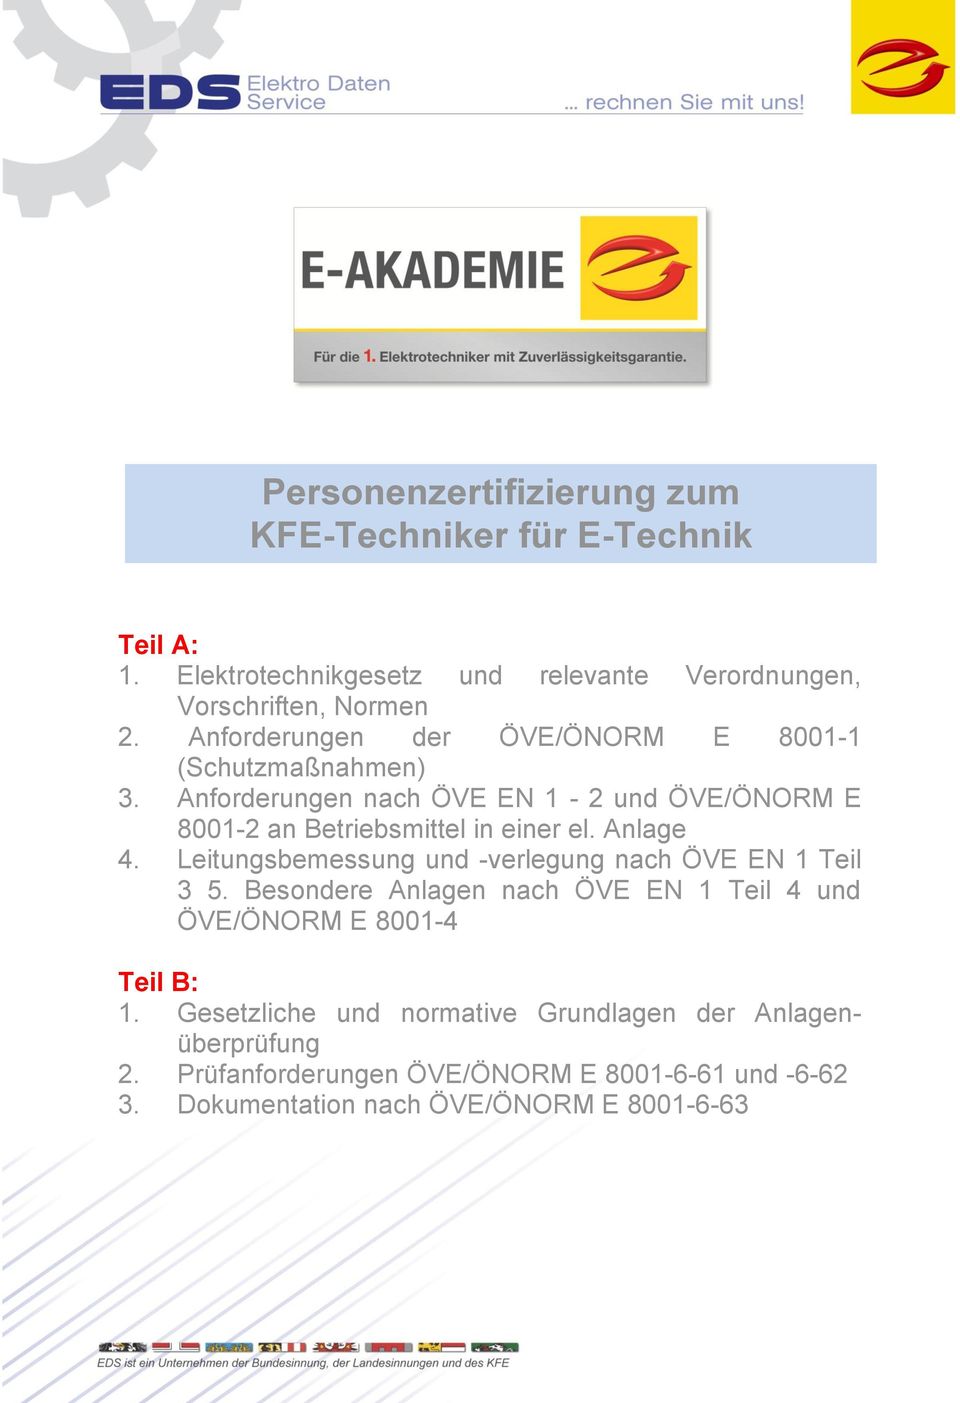 Anforderungen nach ÖVE EN 1-2 und ÖVE/ÖNORM E 8001-2 an Betriebsmittel in einer el. Anlage 4.